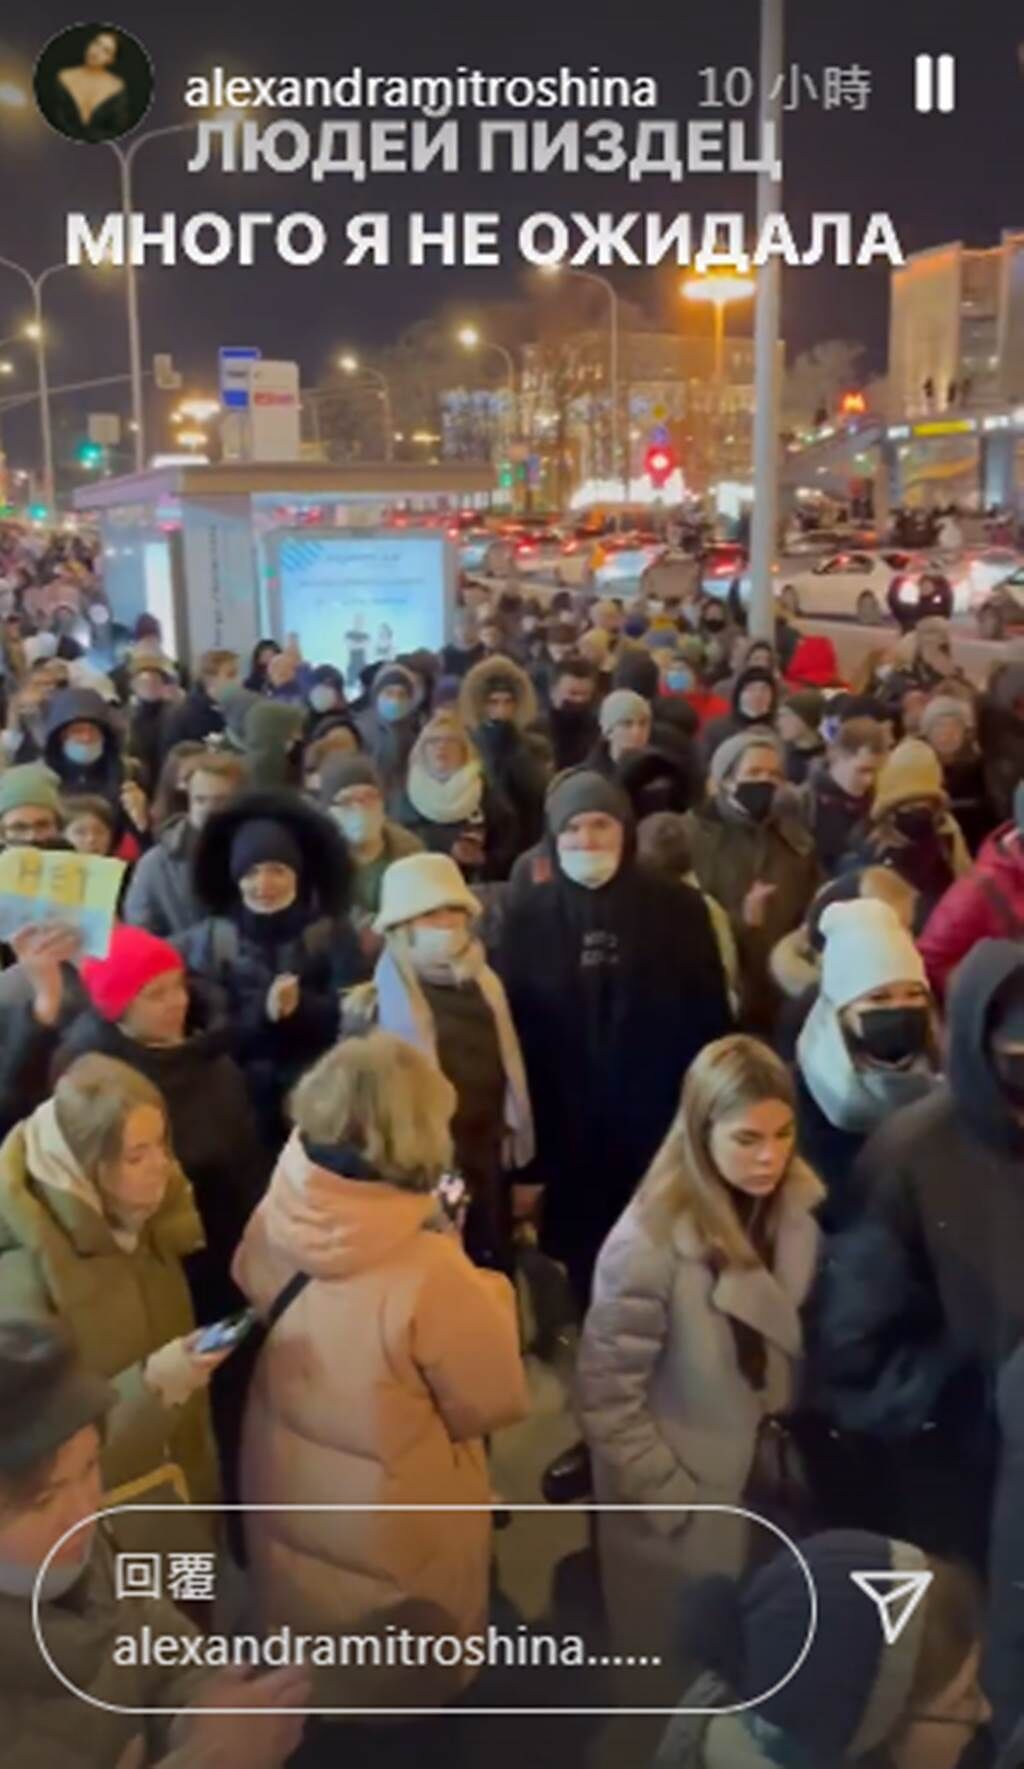 俄羅斯作家米特羅辛娜，曬出俄羅斯民眾遊行抗議戰爭的影片。（alexandramitroshina IG）